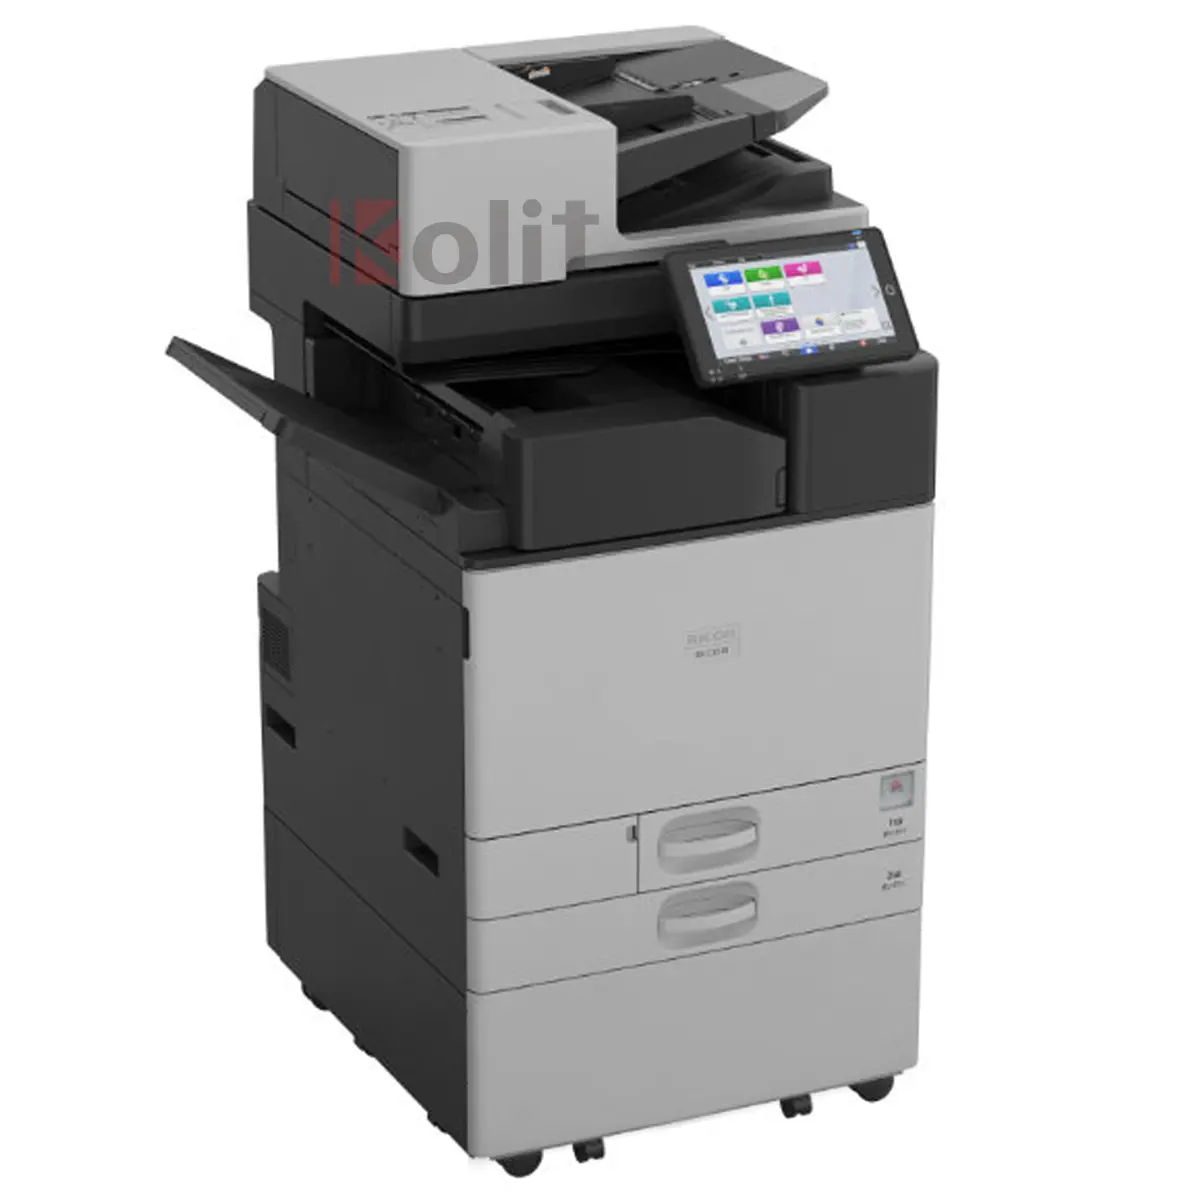 Made in Japan nuovissima macchina fotocopiatrice digitale imm3510 tutto in uno Scanner stampante Laser a3 per Ricoh